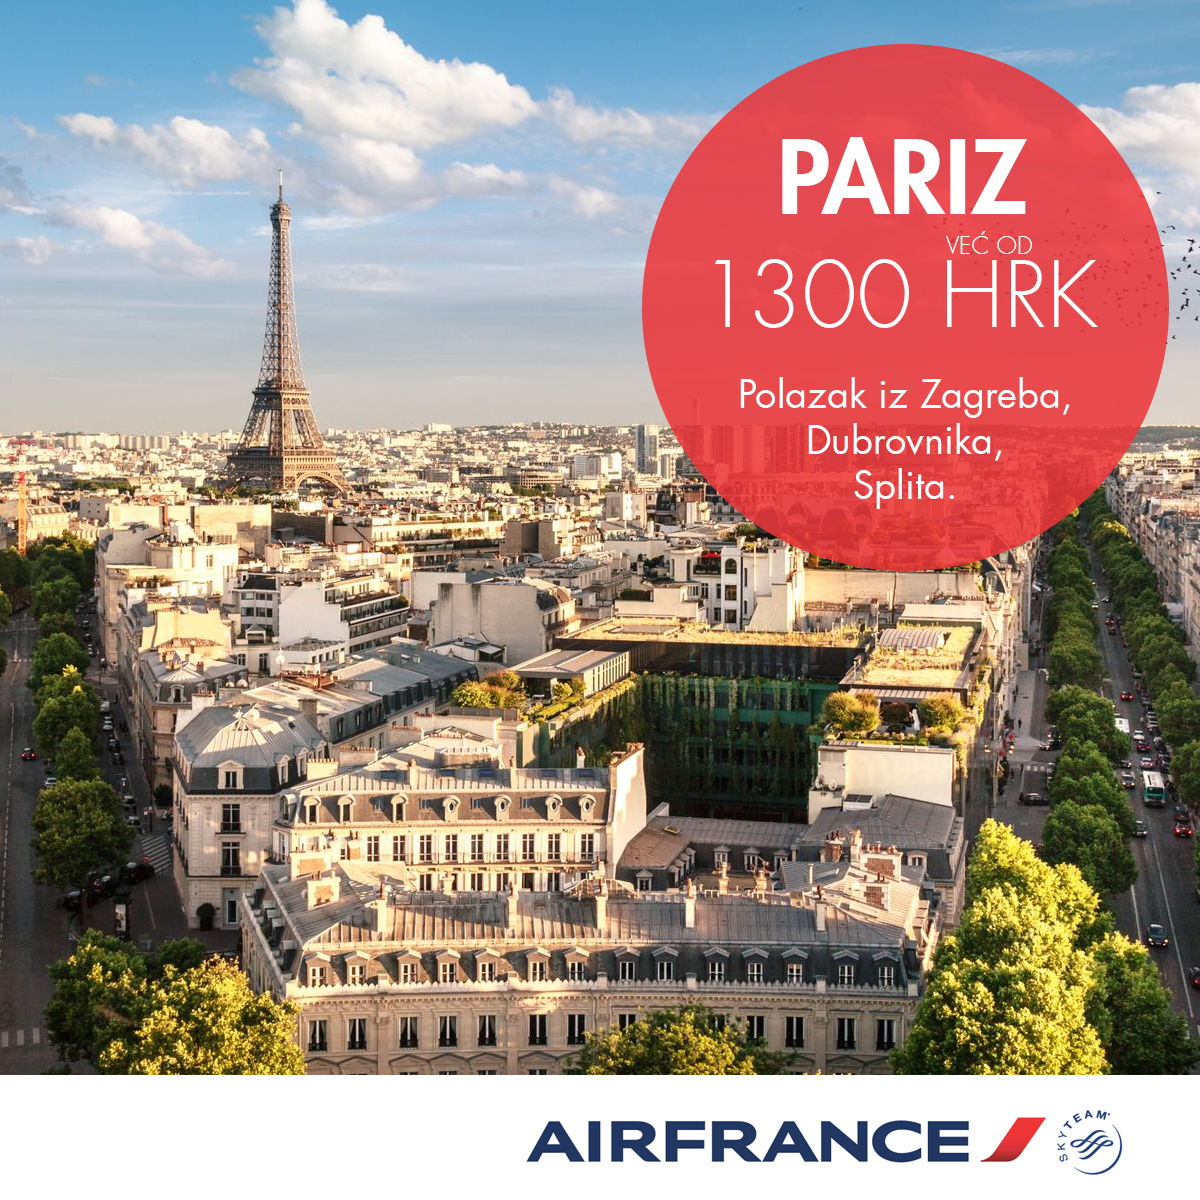 Pariz akcija 2019, Zagreb pariz, Split pariz, dubrovnik pariz, eiffelov toranj